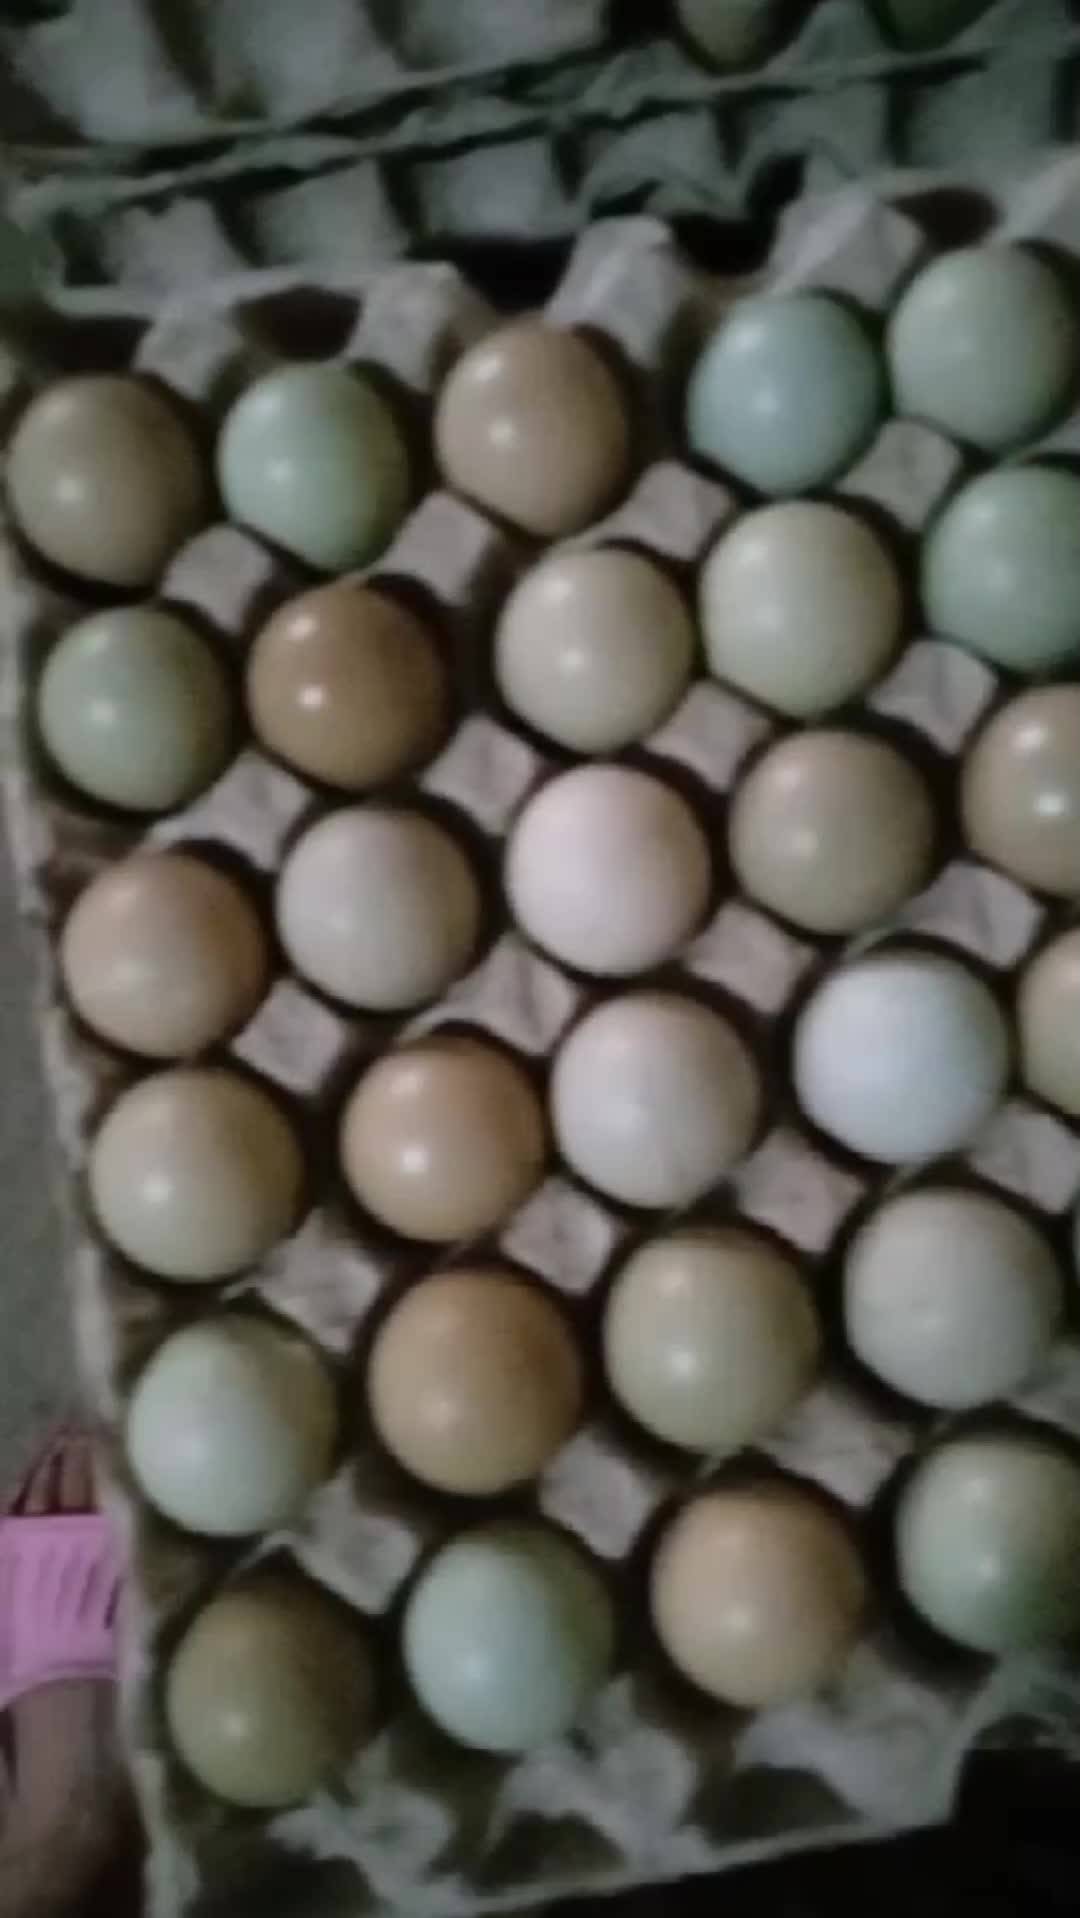 商河县莲姐散养七彩山鸡蛋中码蛋。